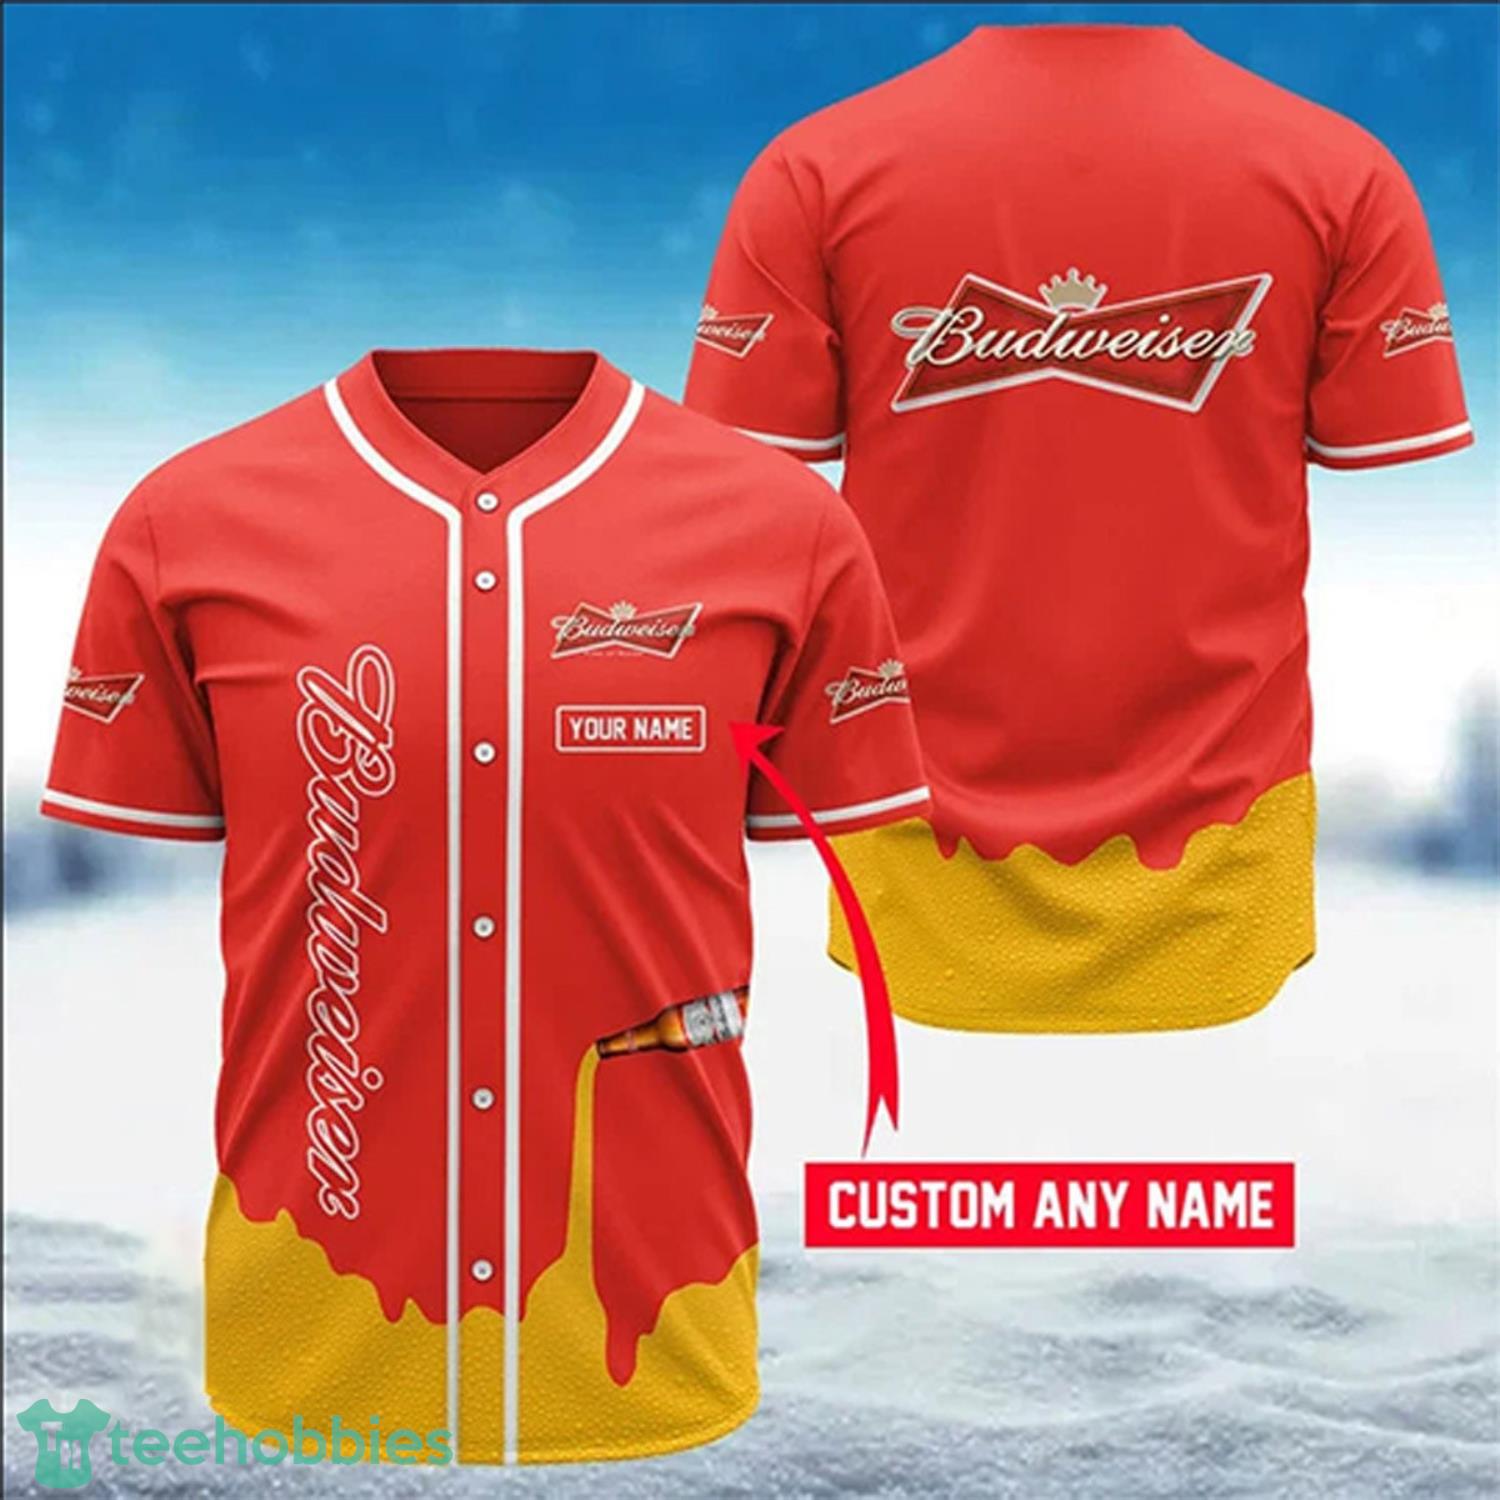 Personalized Budweiser Baseball Jersey TShirt Product Photo 2